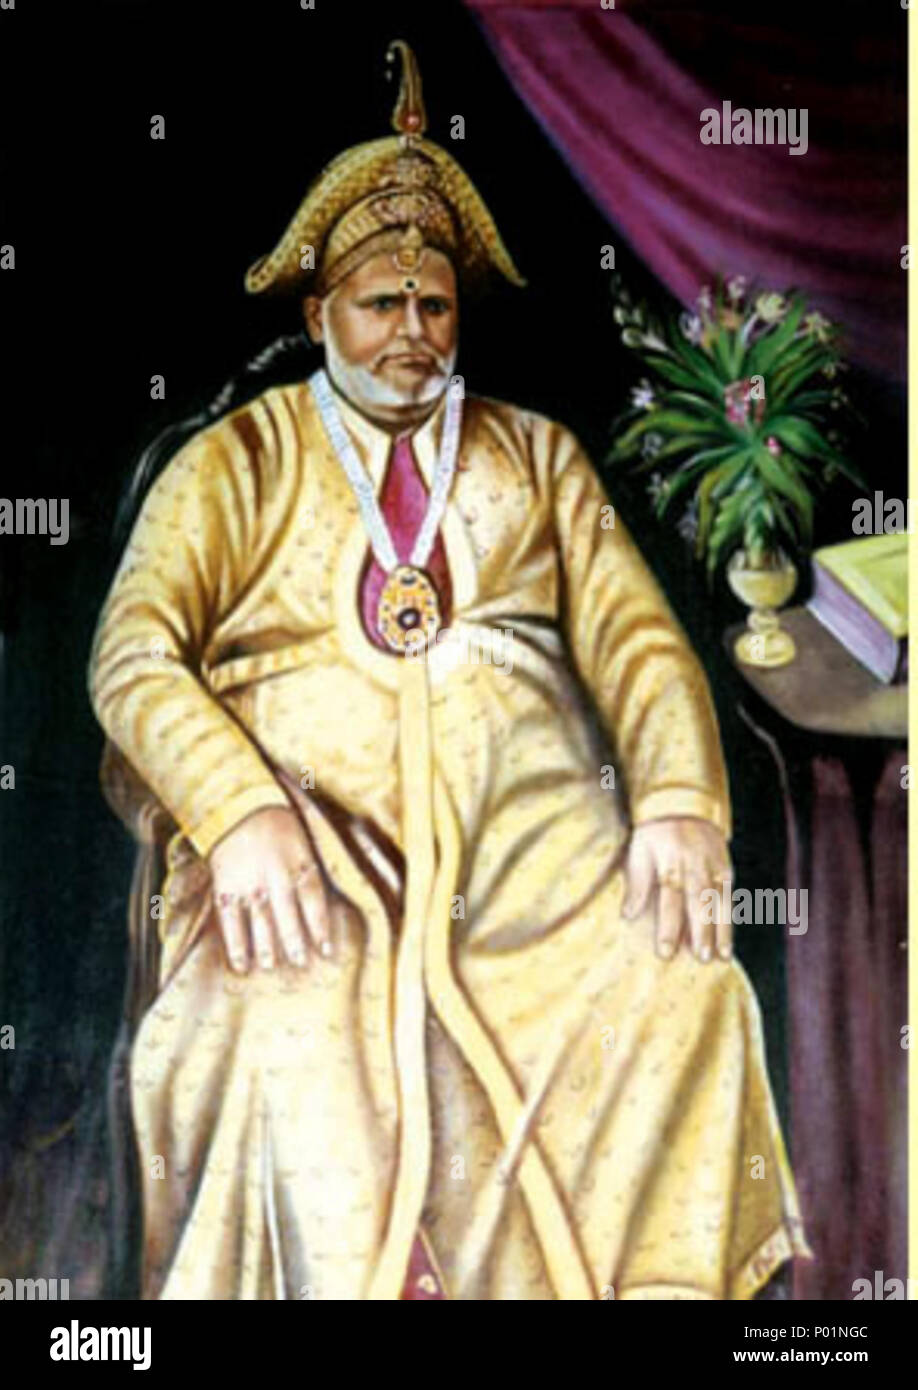 . Englisch: Zamorin von Calicut (1868-1892). 1766 Haider Ali von Mysore besiegte den Zamorin von Calicut - ein English East India Company zum Zeitpunkt abhängig - und absorbiert Malabar Bezirk zu sein. Nach dem Dritten Mysore Krieg (1790-92), Malabar war unter der Kontrolle des Unternehmens gelegt. Später den Status des Zamorins als unabhängiger Herrscher war, wie die Rentner des Unternehmens geändert. . 3.August 2010, 04:35:30. Unbekannt 107 Zamorin von Calicut (1868-1892) Stockfoto